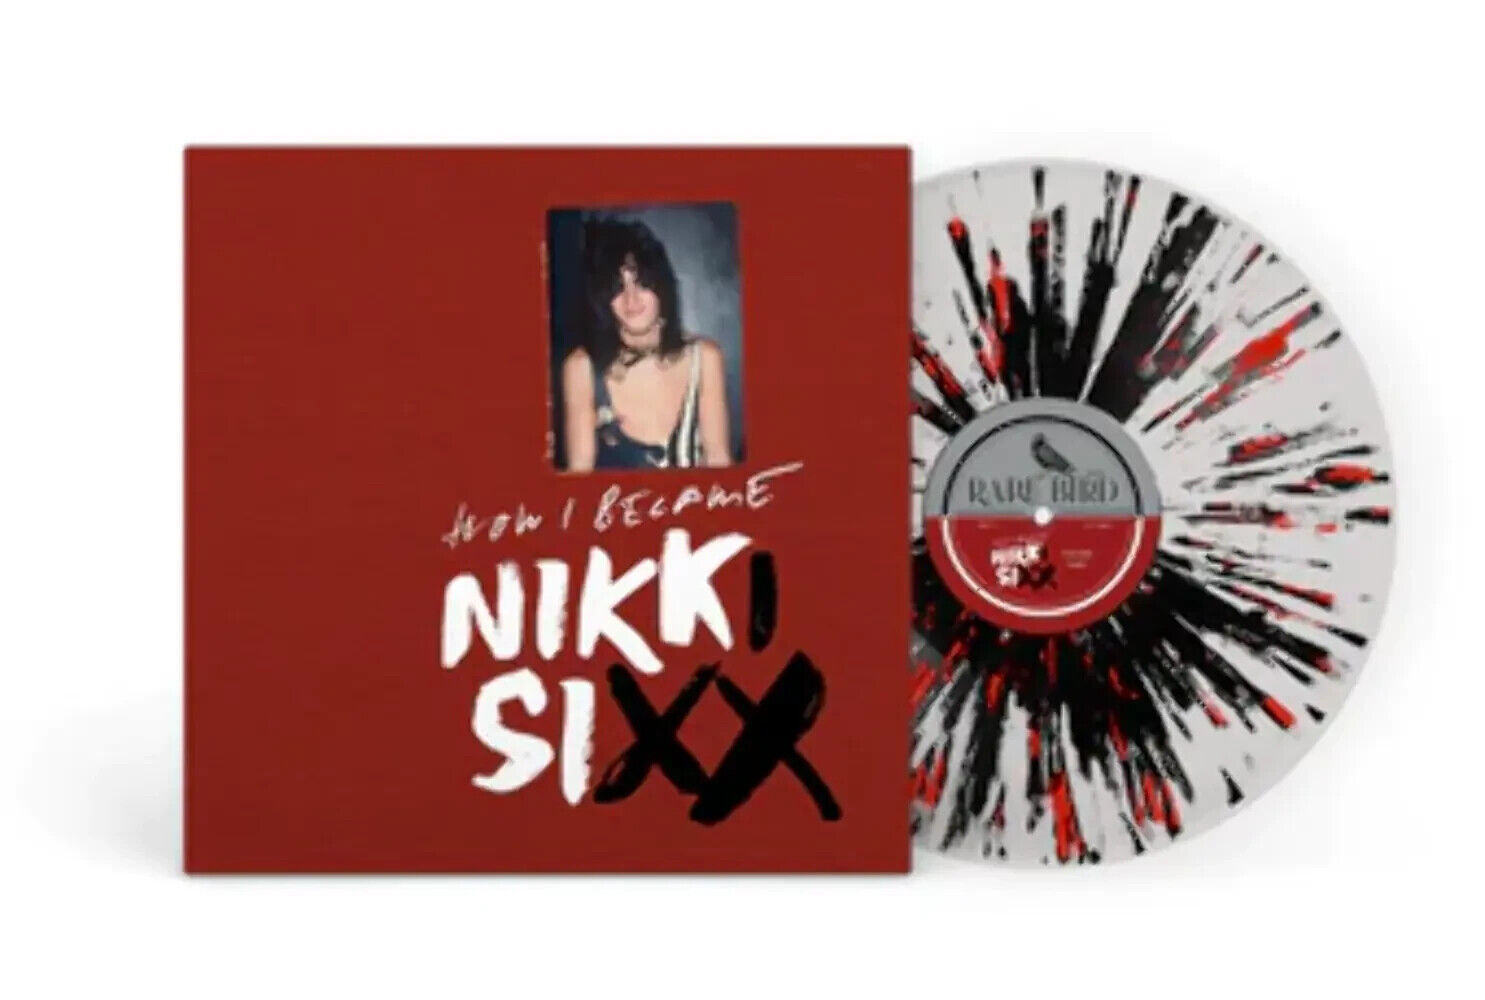 Nikki Sixx - The First 21: How I Became Nikki Sixx -Splatter Vinyl - NEW Sealed